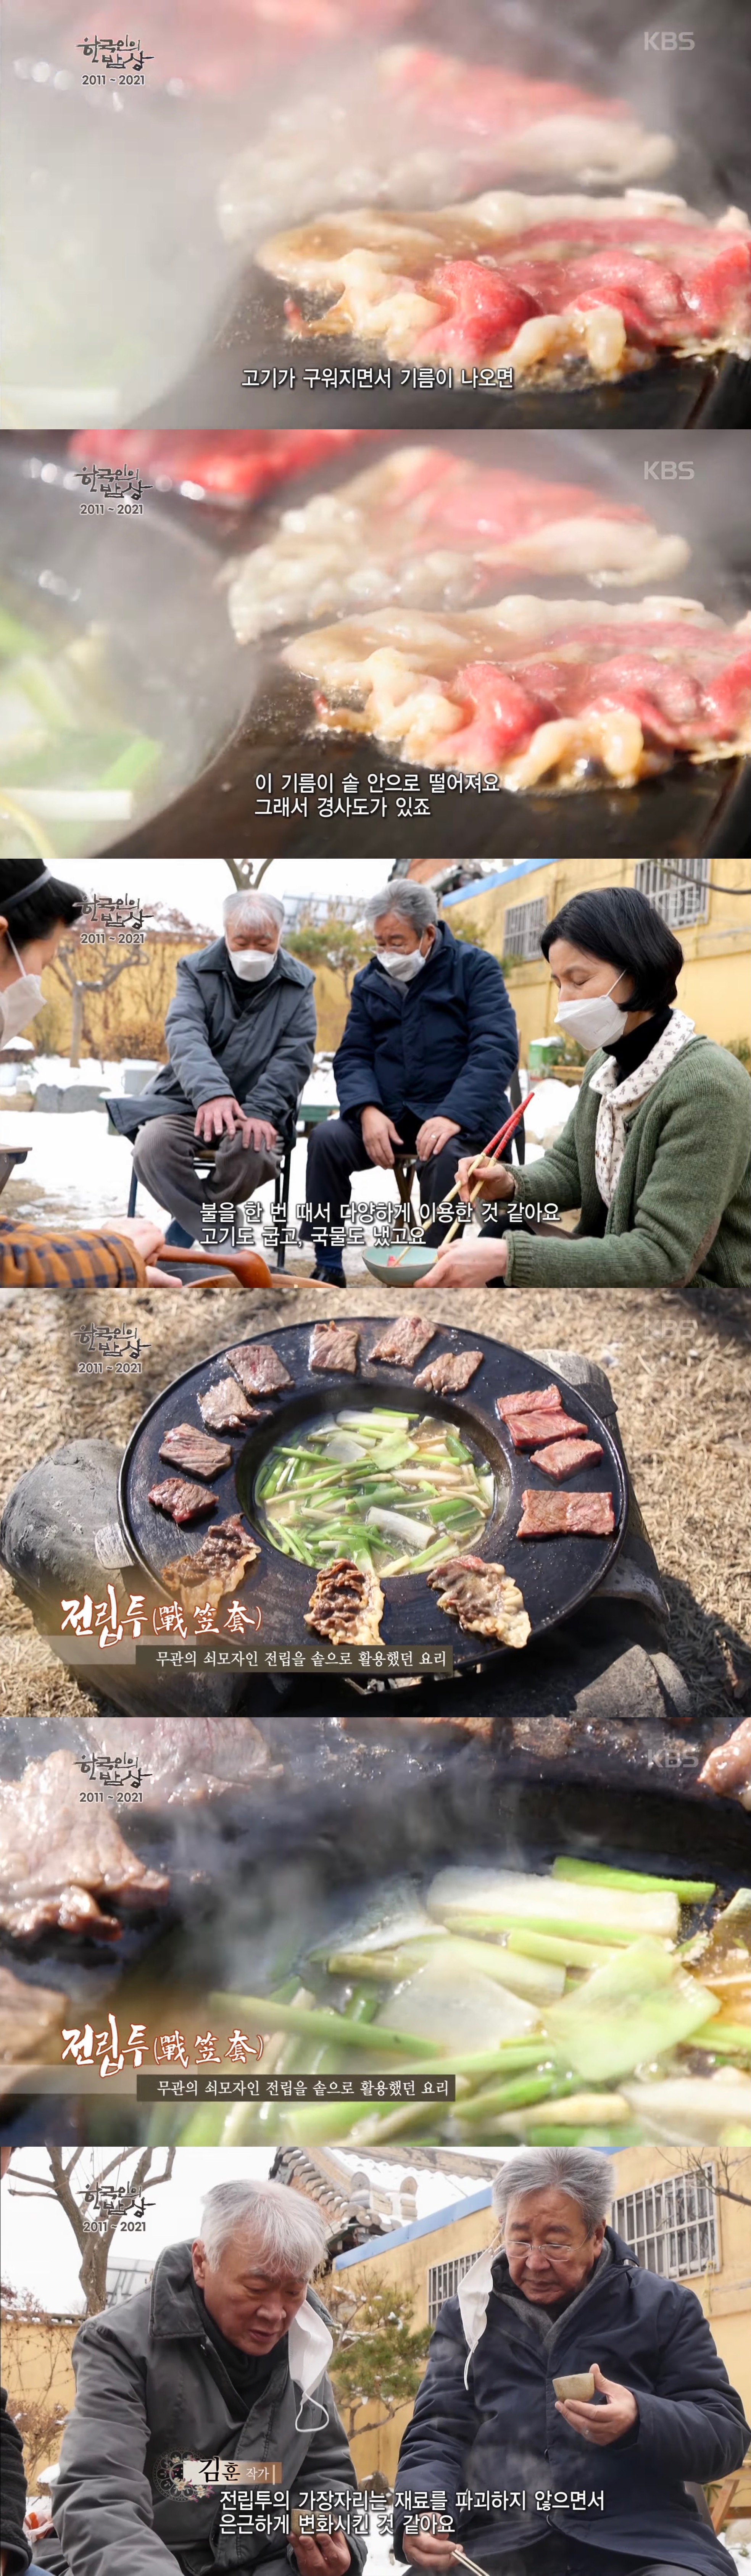 모자를 조리기구로 이용해 만들어 먹던 한국 전통요리.JPG